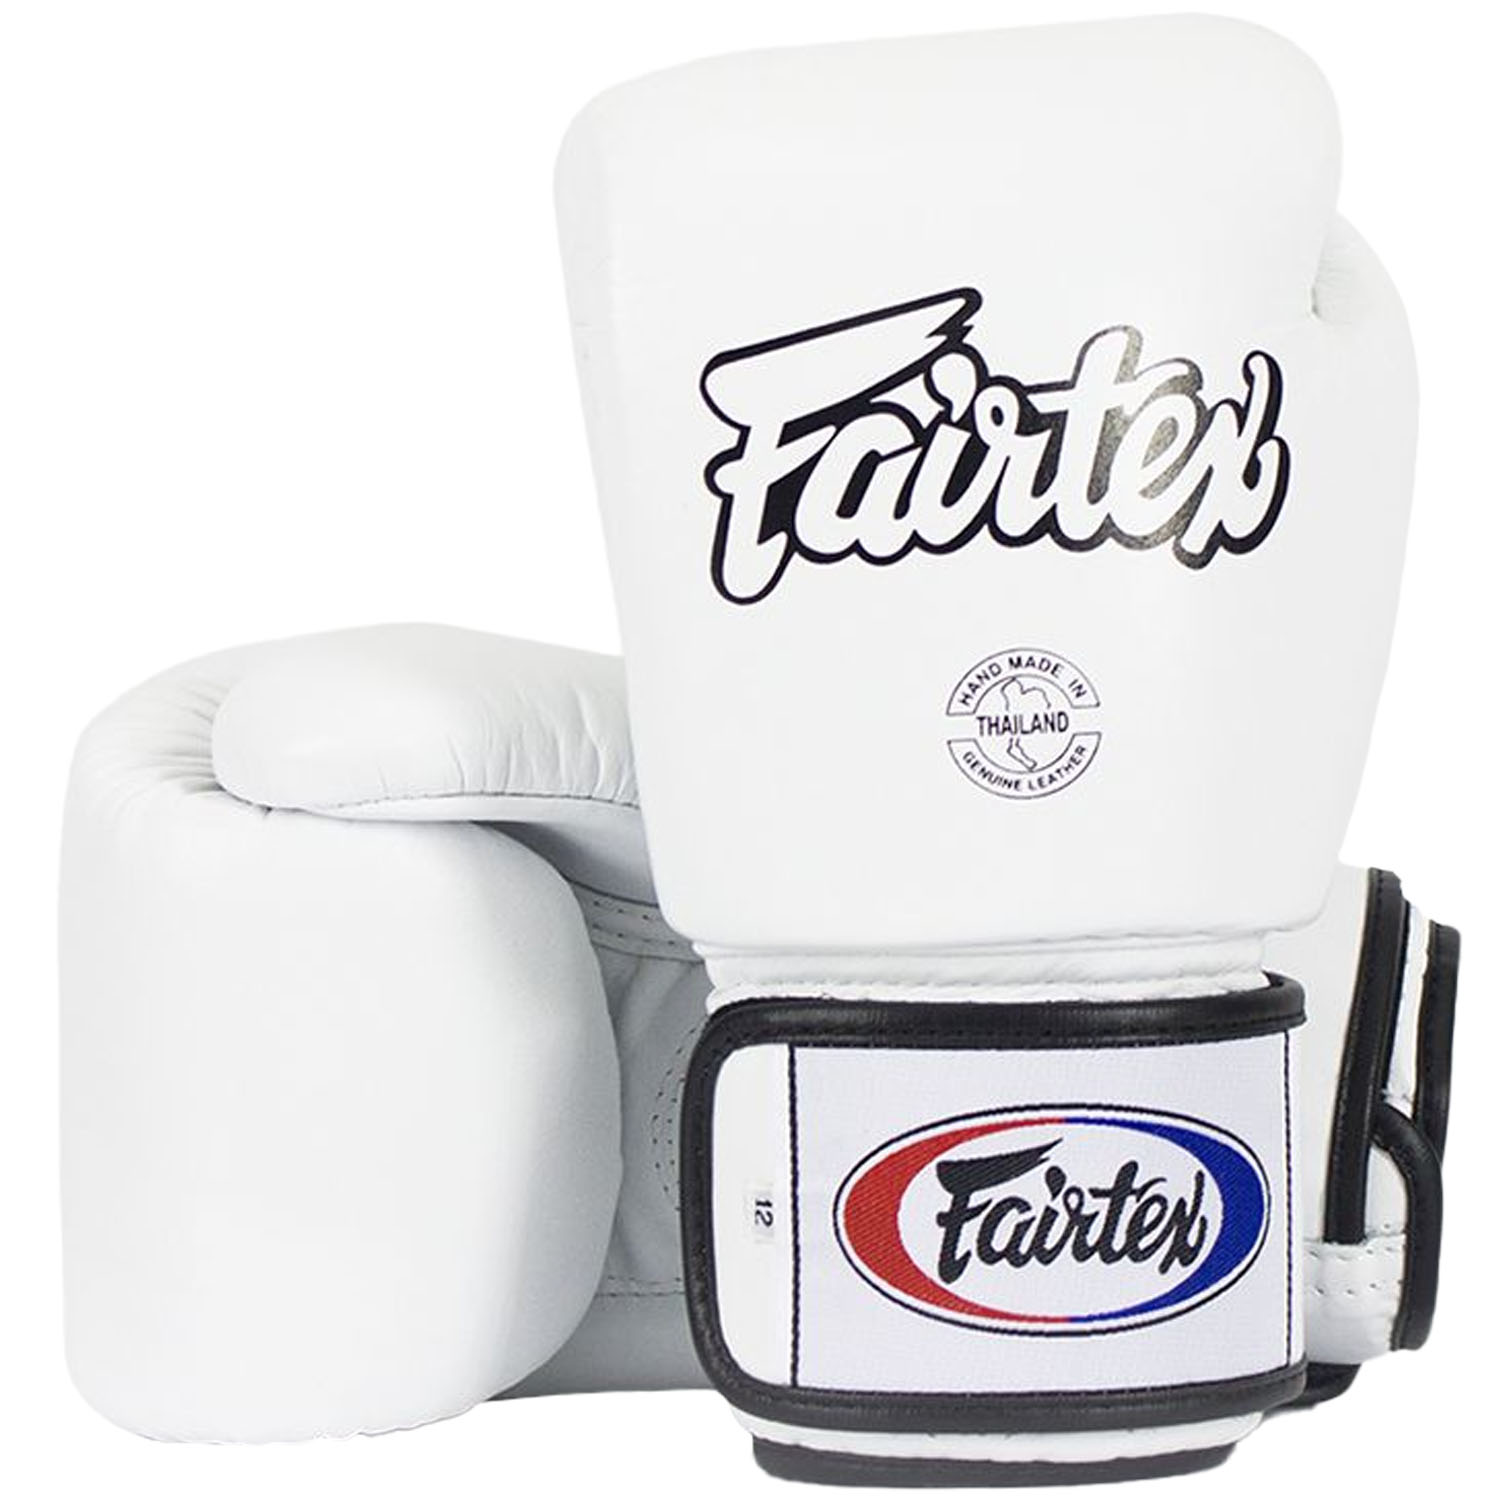 Fairtex Boxing Gloves, BGV1 AIR, white